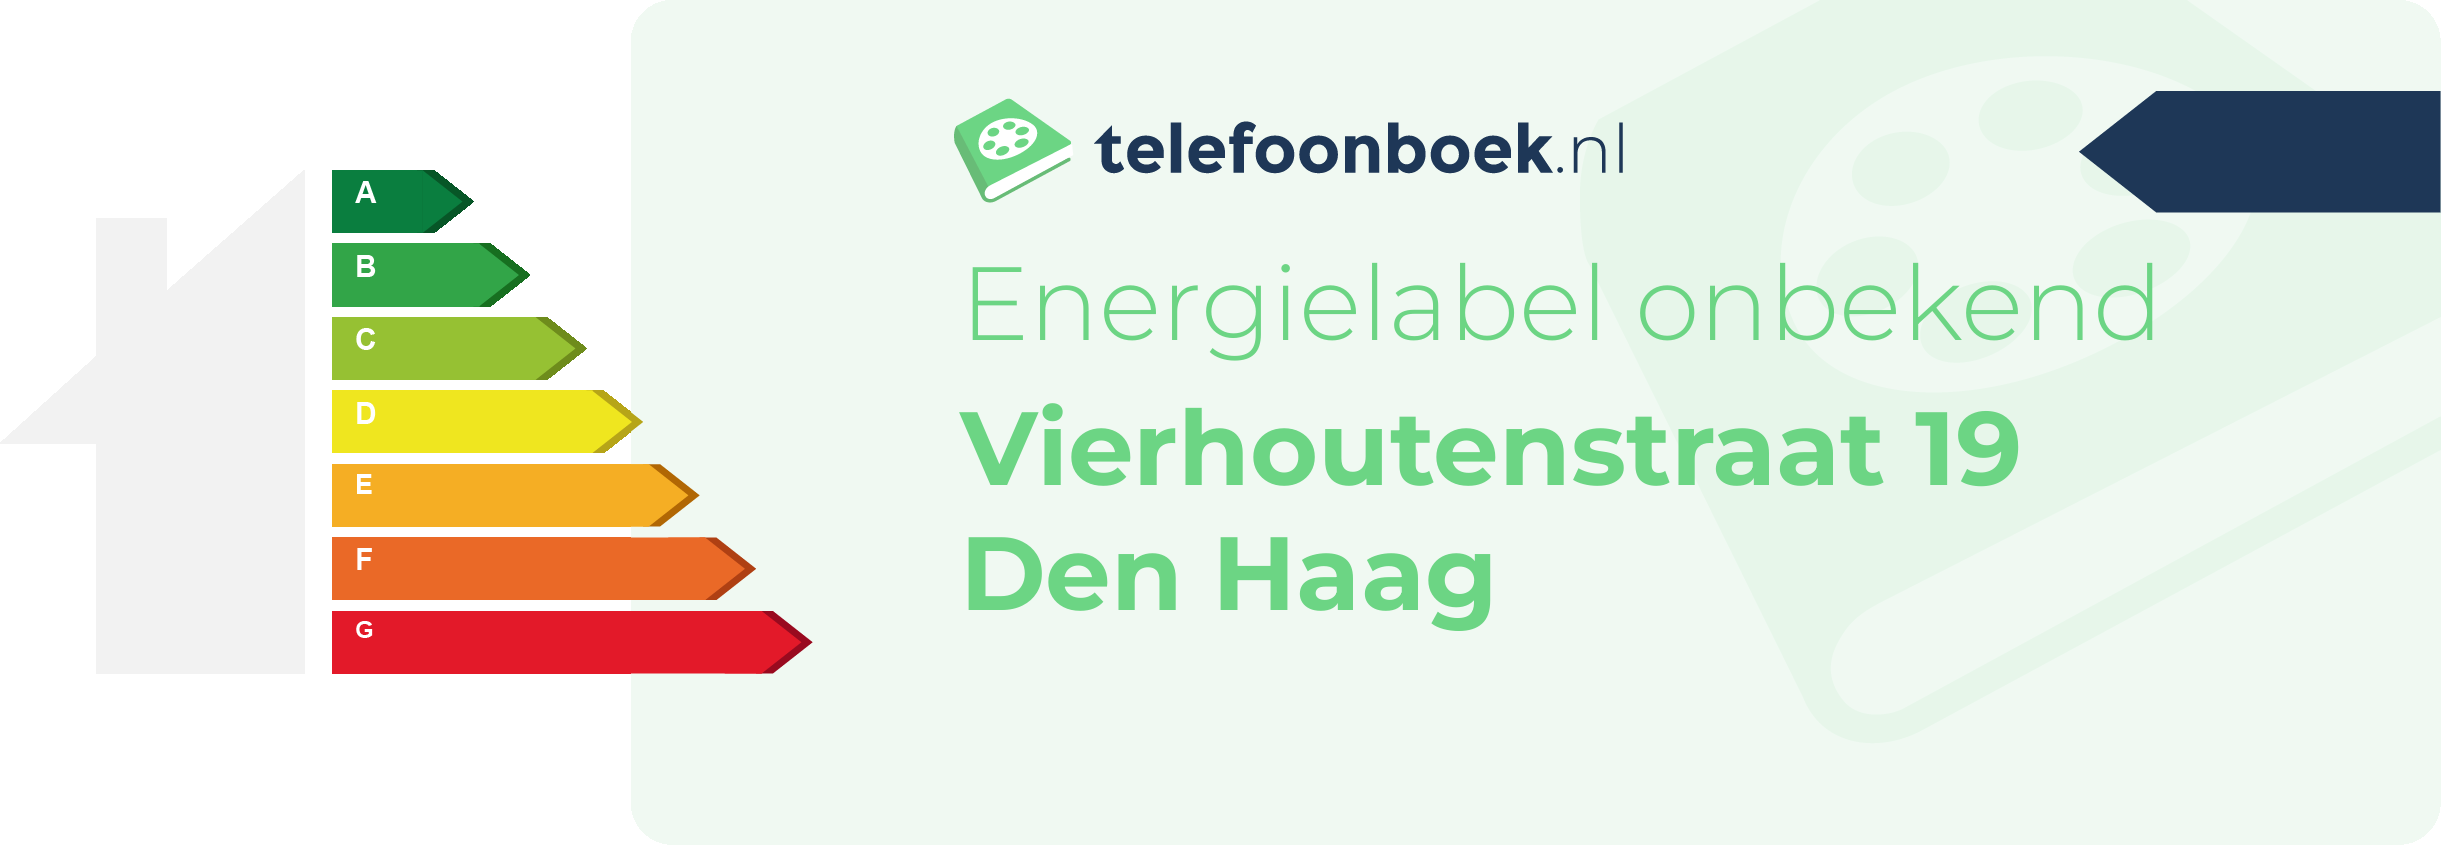 Energielabel Vierhoutenstraat 19 Den Haag